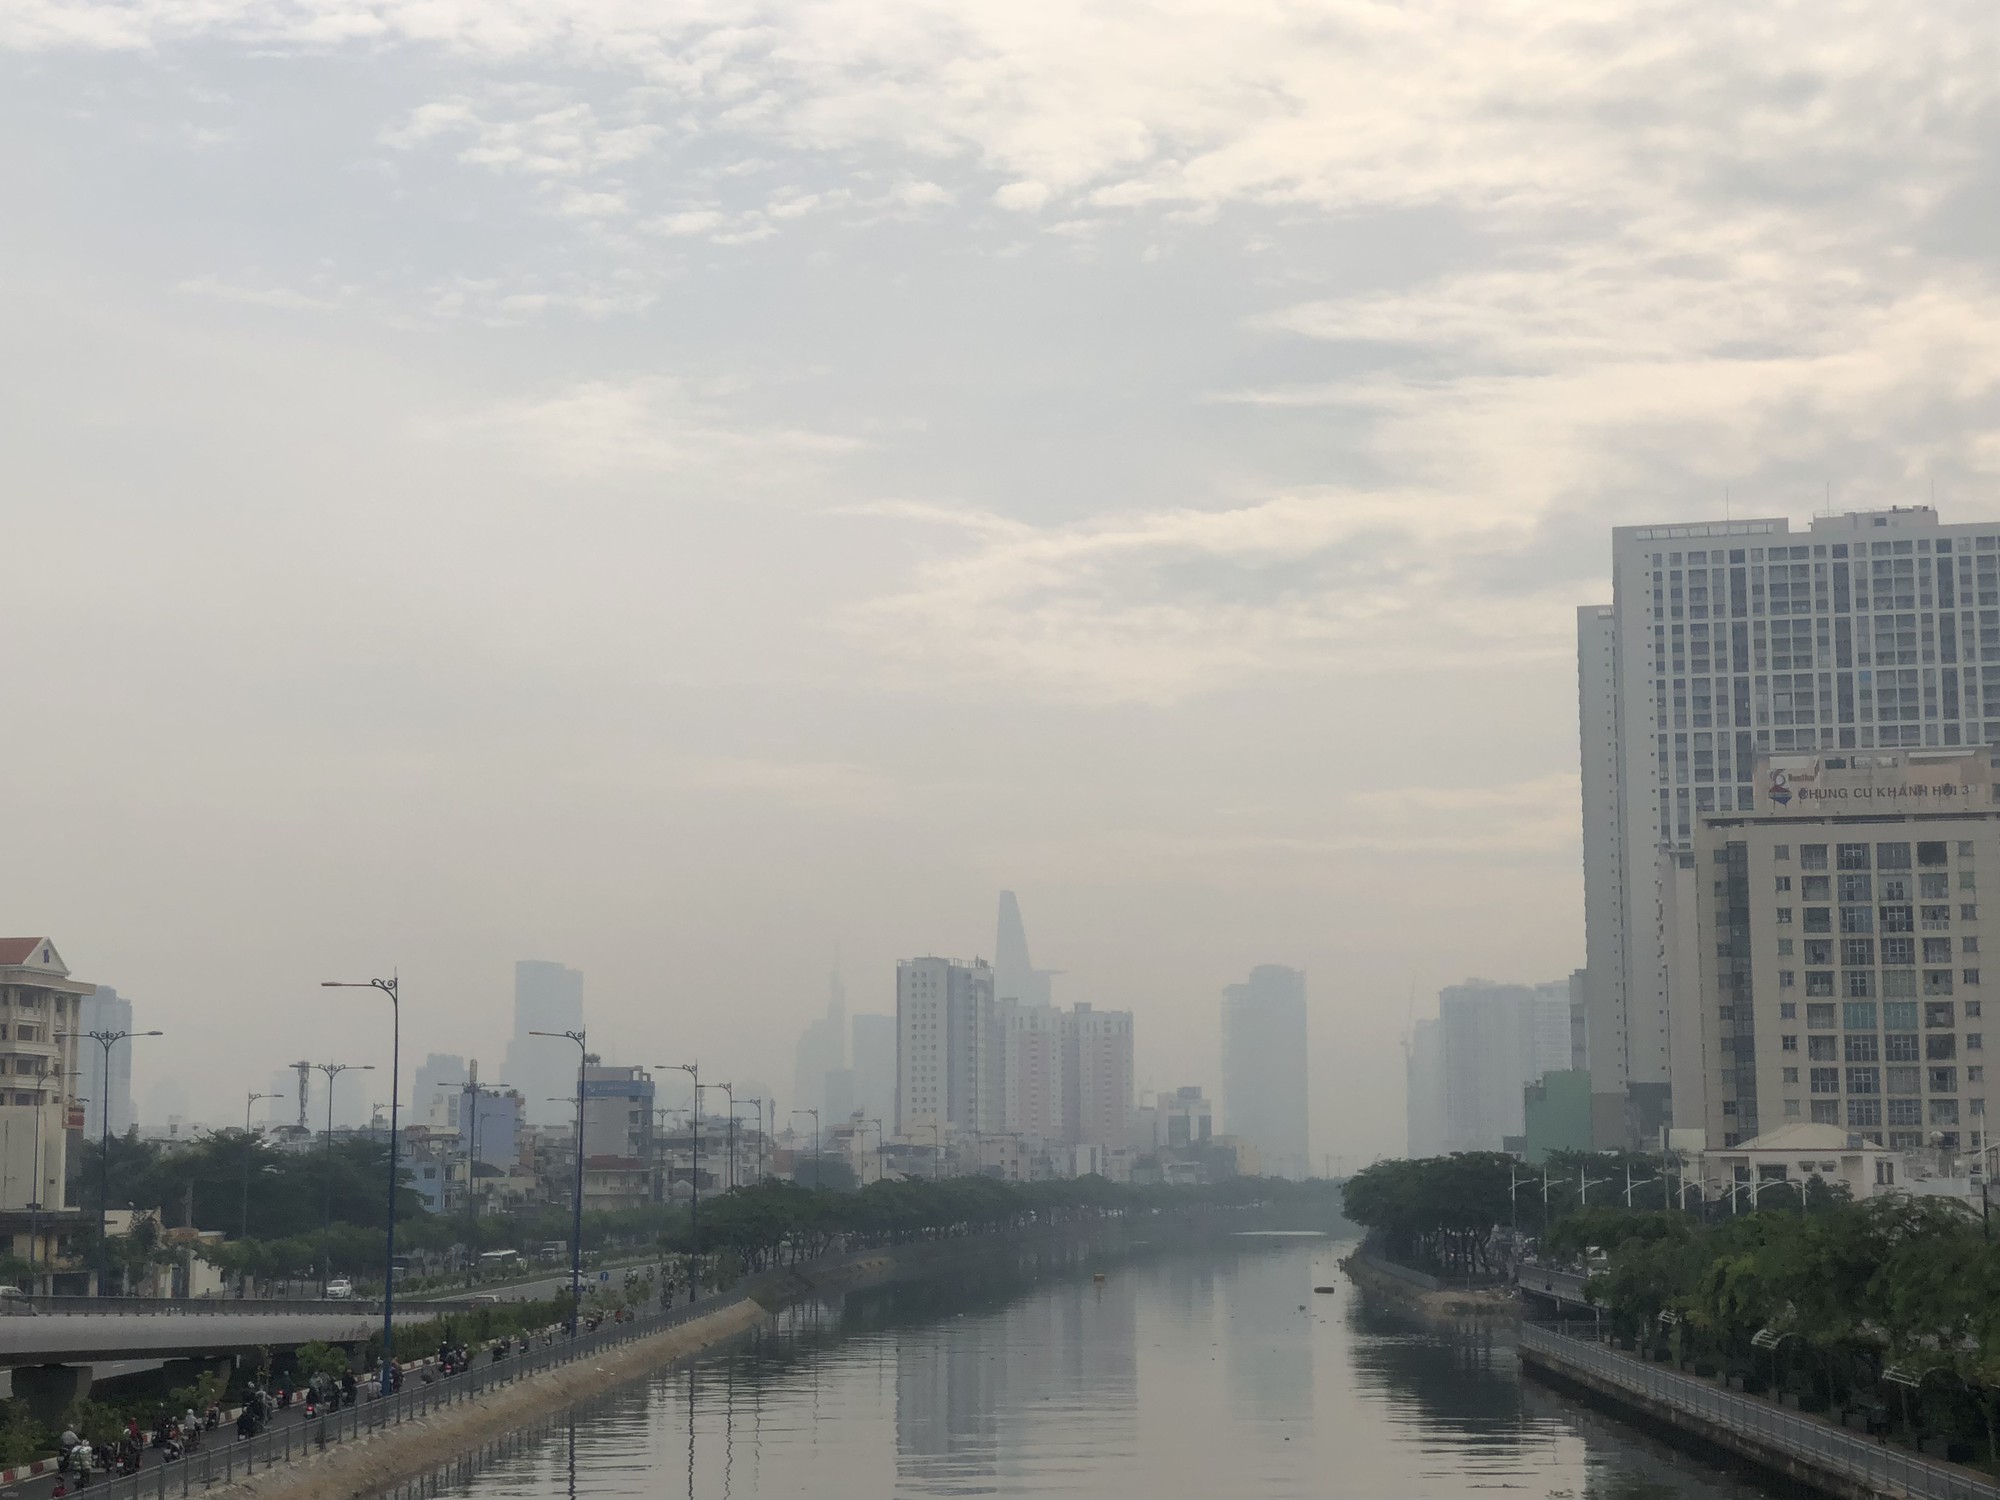 Không khí của thành phố Hồ Chí Minh đang bị ô nhiễm ngày một trầm trọng, hãy cùng xem những hình ảnh của đô thị đông đúc, phủ mờ bởi màn sương mù ám ảnh. Những bức ảnh này sẽ cho bạn thấy tình trạng ô nhiễm không khí và cũng là lời nhắc nhở chúng ta cần bảo vệ môi trường đô thị ngày càng tốt hơn.